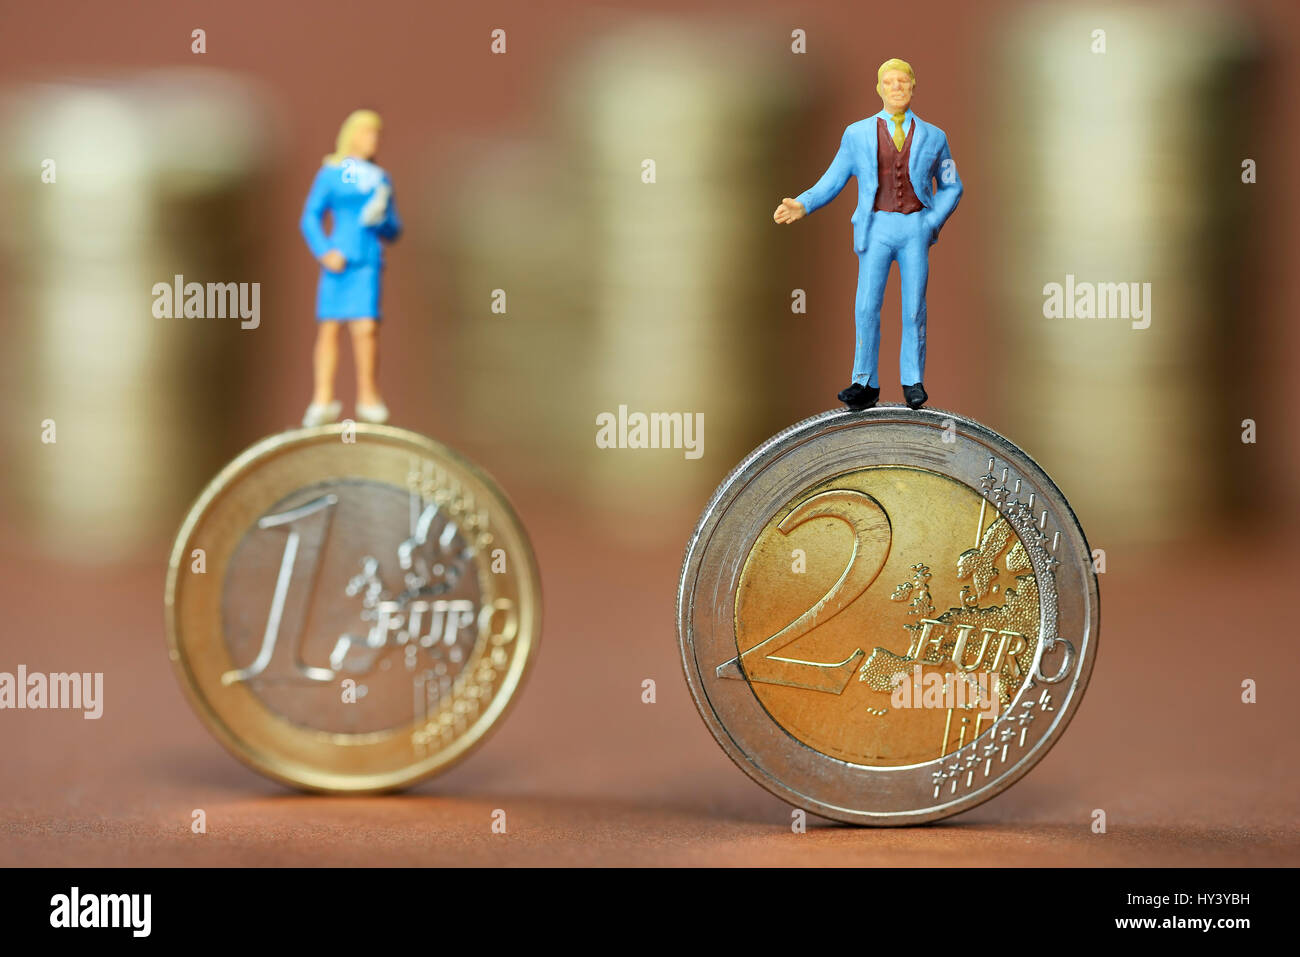 Le figure in miniatura di un uomo e di una donna su un uno e euro